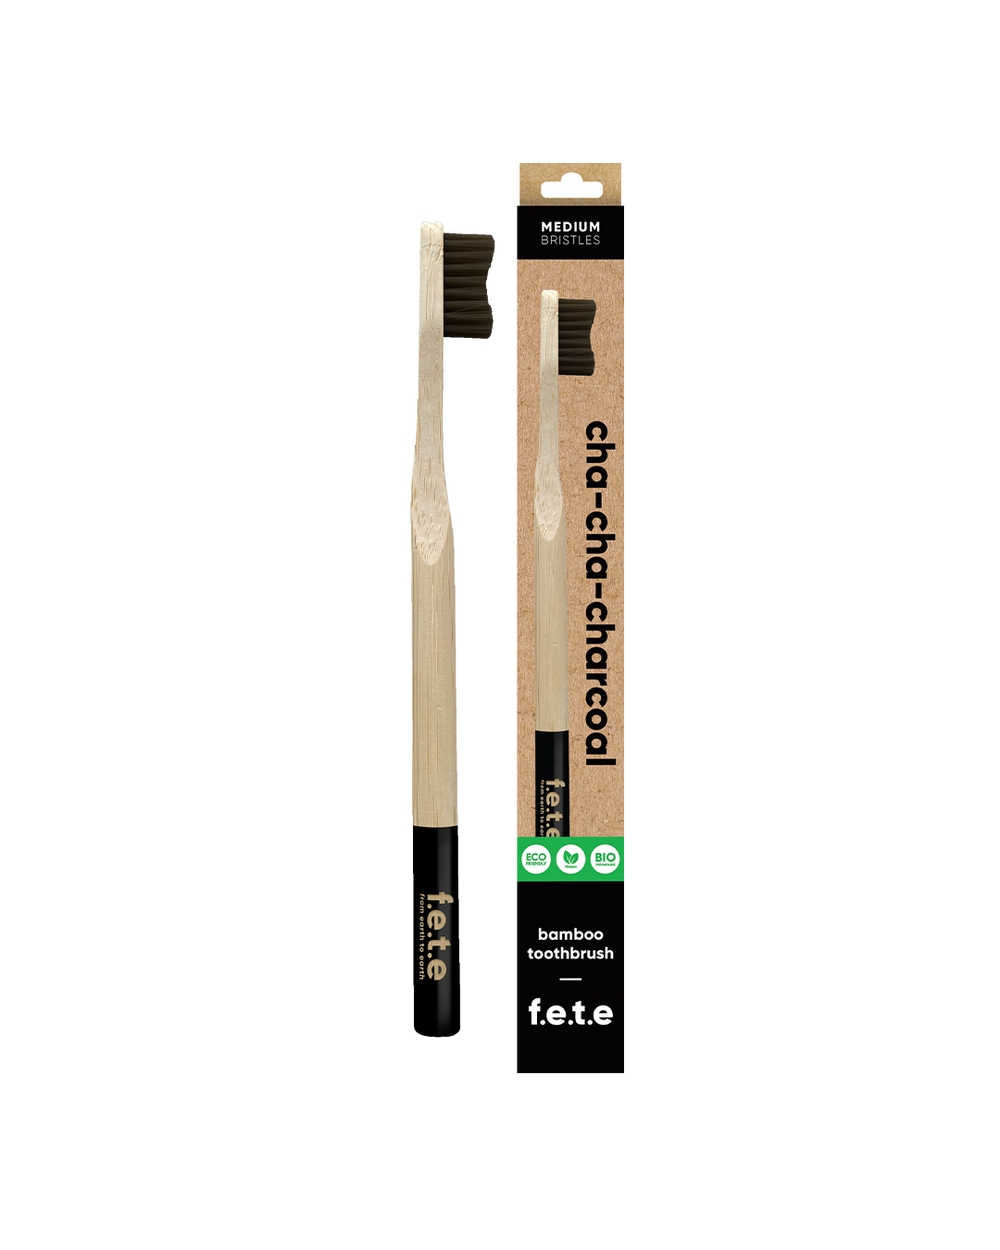 Bamboo toothbrush - medium softness fibers